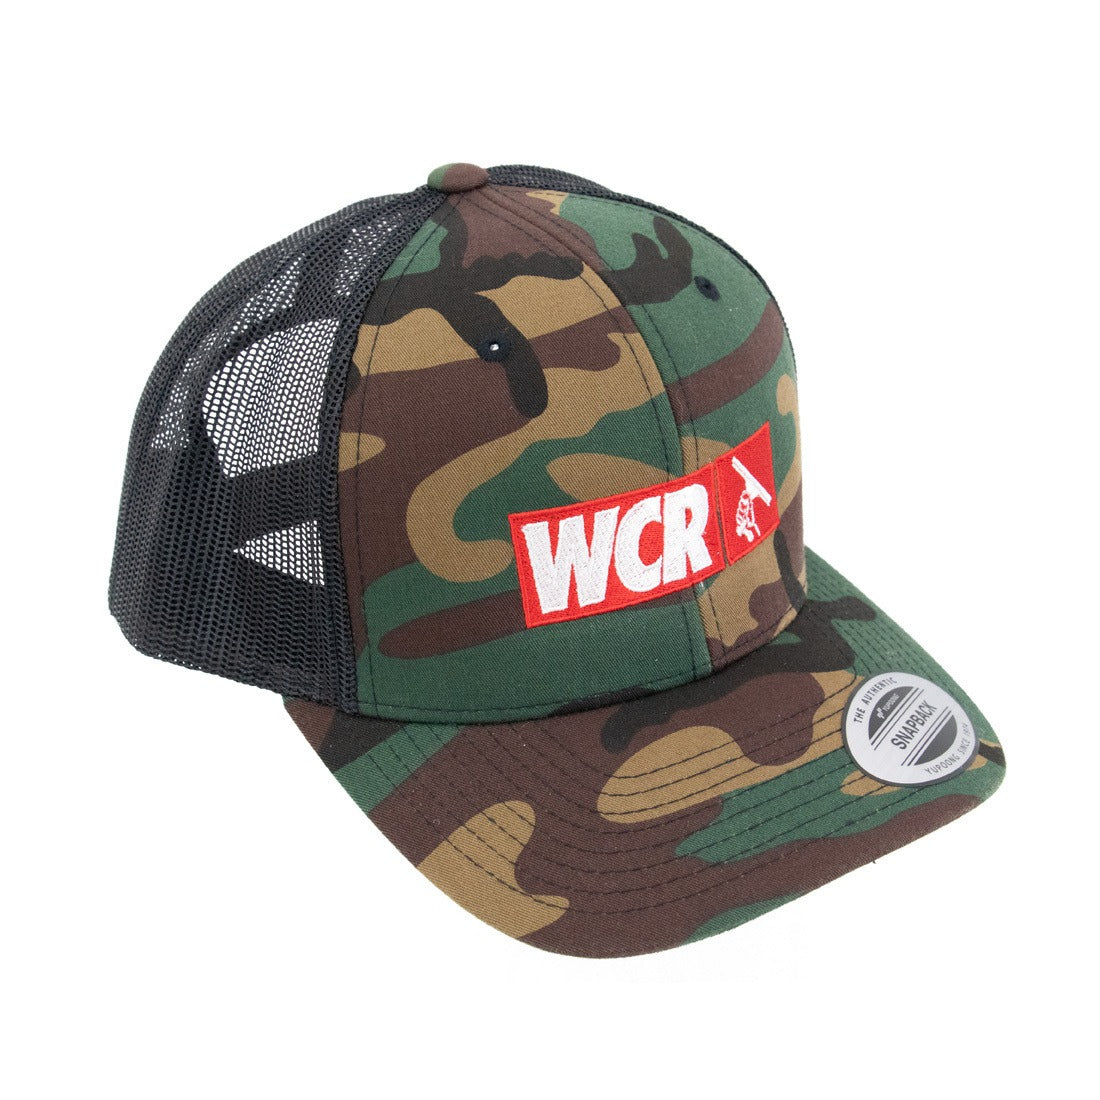 WCR Camo Hat Oblique Left View